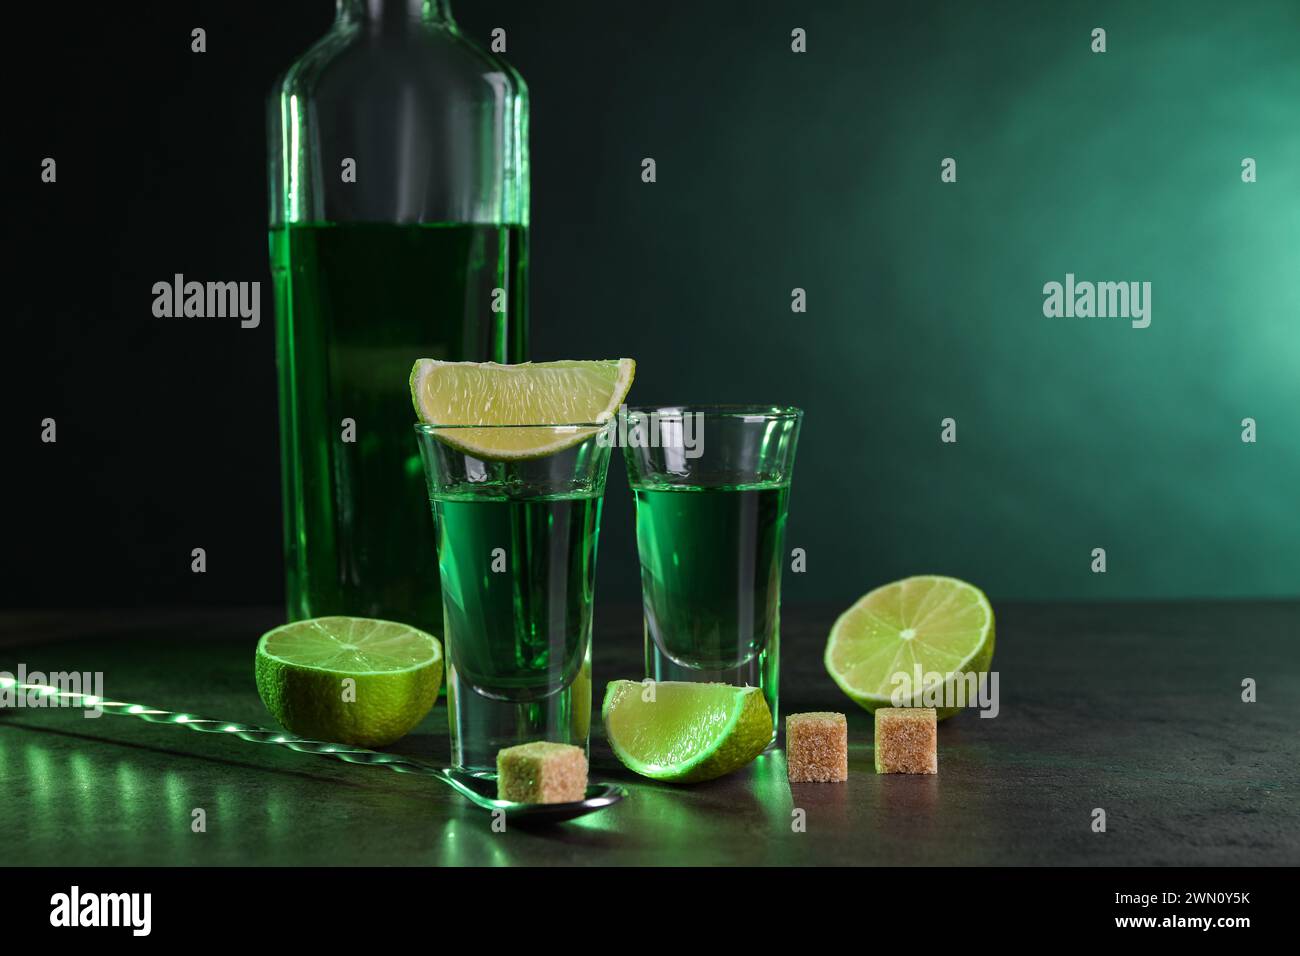 Absinthe in bicchieri da shot, cucchiaio, cubetti di zucchero di canna e lime su un tavolo testurizzato grigio su sfondo verde, spazio per il testo. Bevanda alcolica Foto Stock